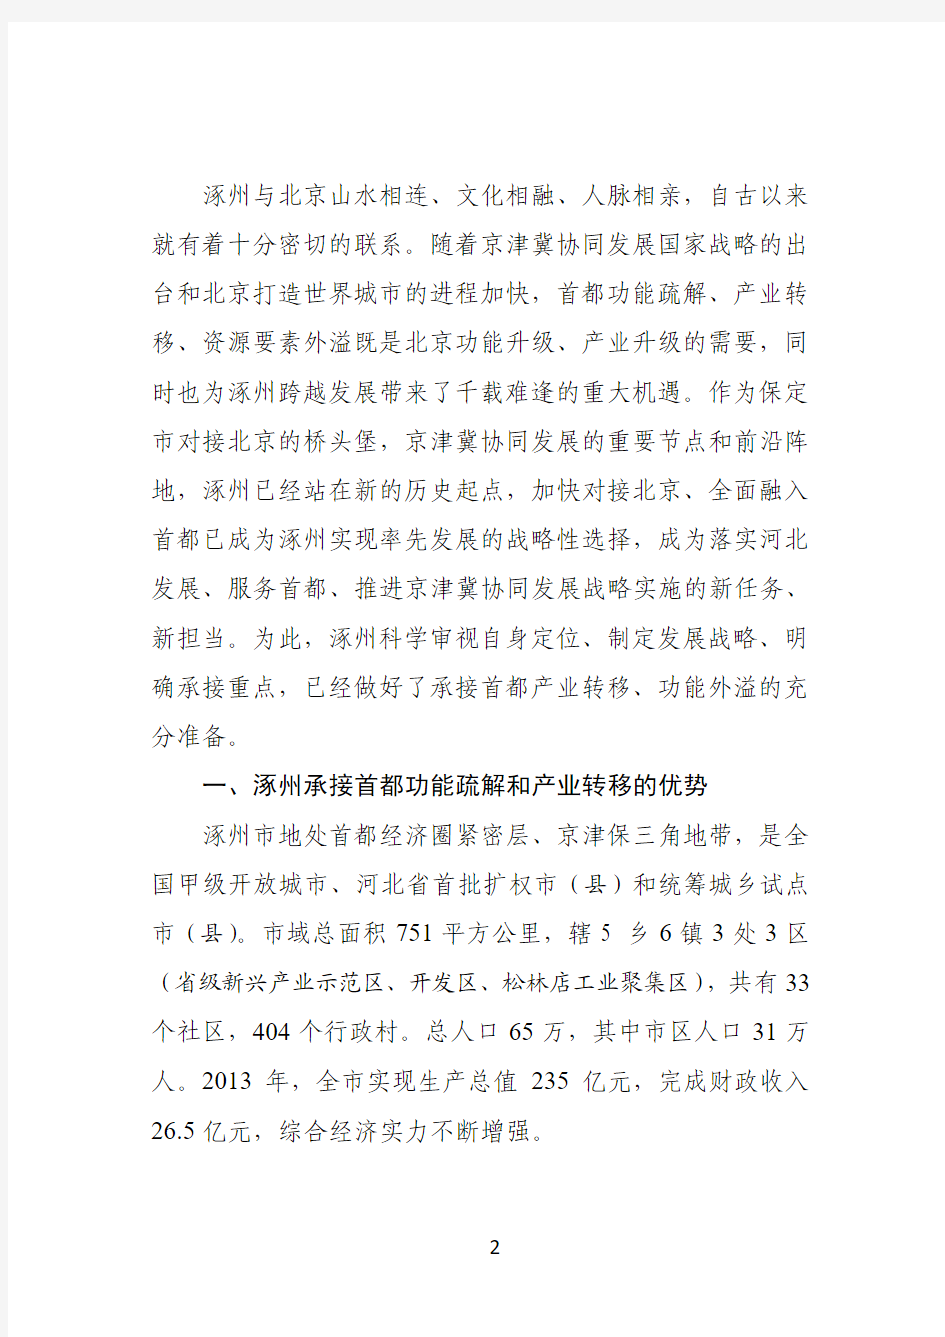 关于涿州市承接首都功能疏解和产业转移的战略研究(定稿)